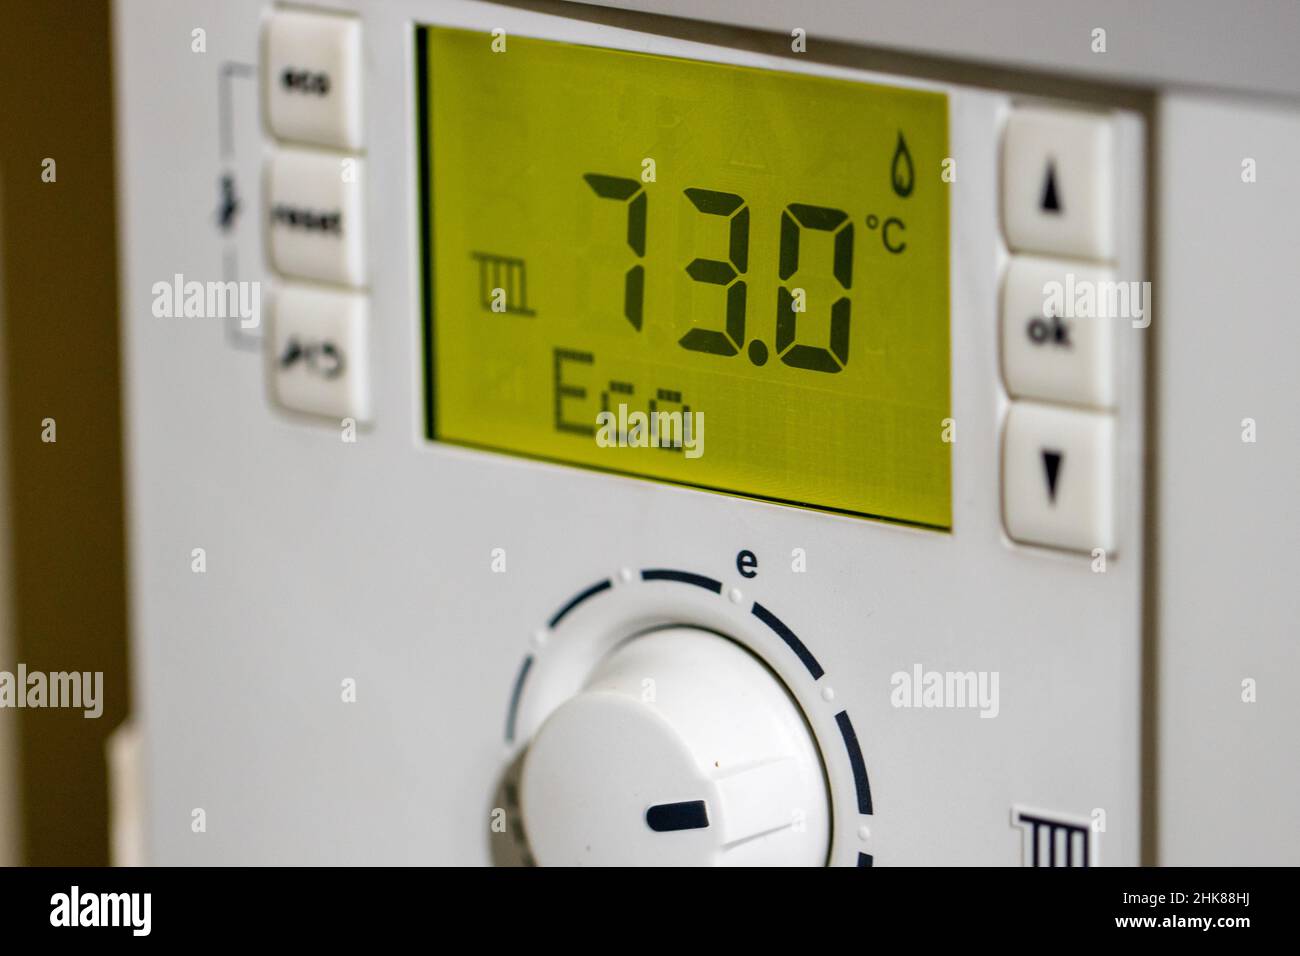 Un panneau de commande de chaudière à gaz réglé sur le mode ECO Photo Stock  - Alamy